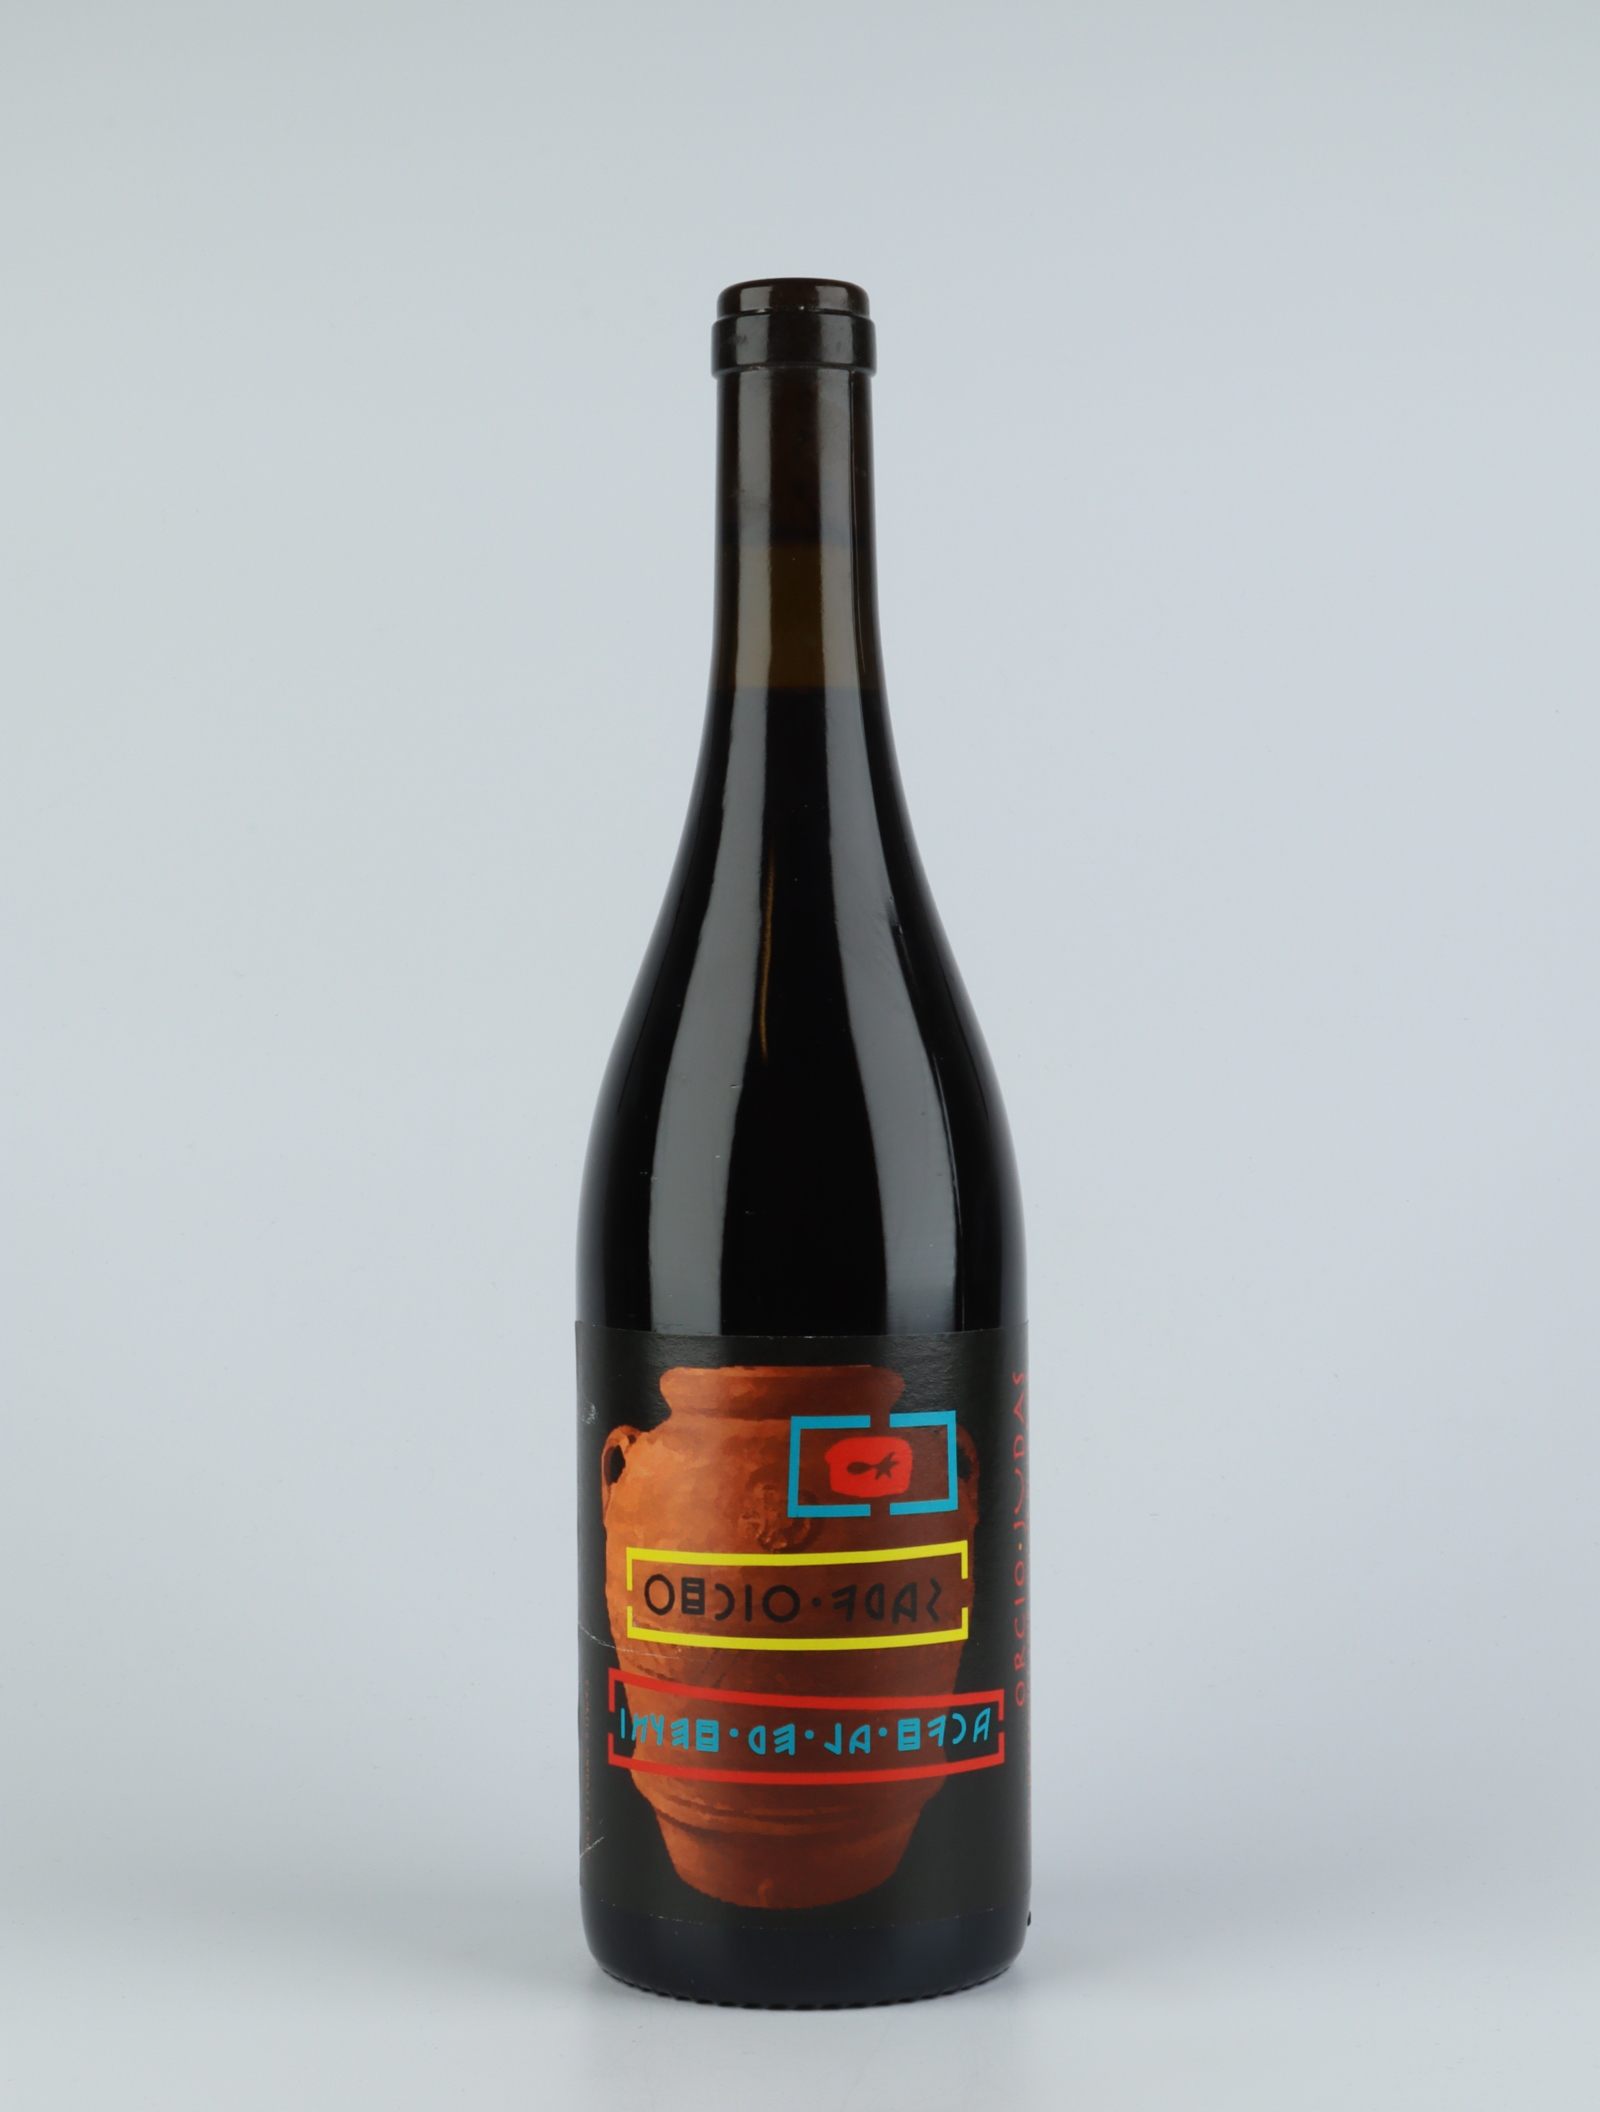 En flaske 2019 Orcio Judas Rødvin fra Vinyer de la Ruca, Rousillon i Frankrig